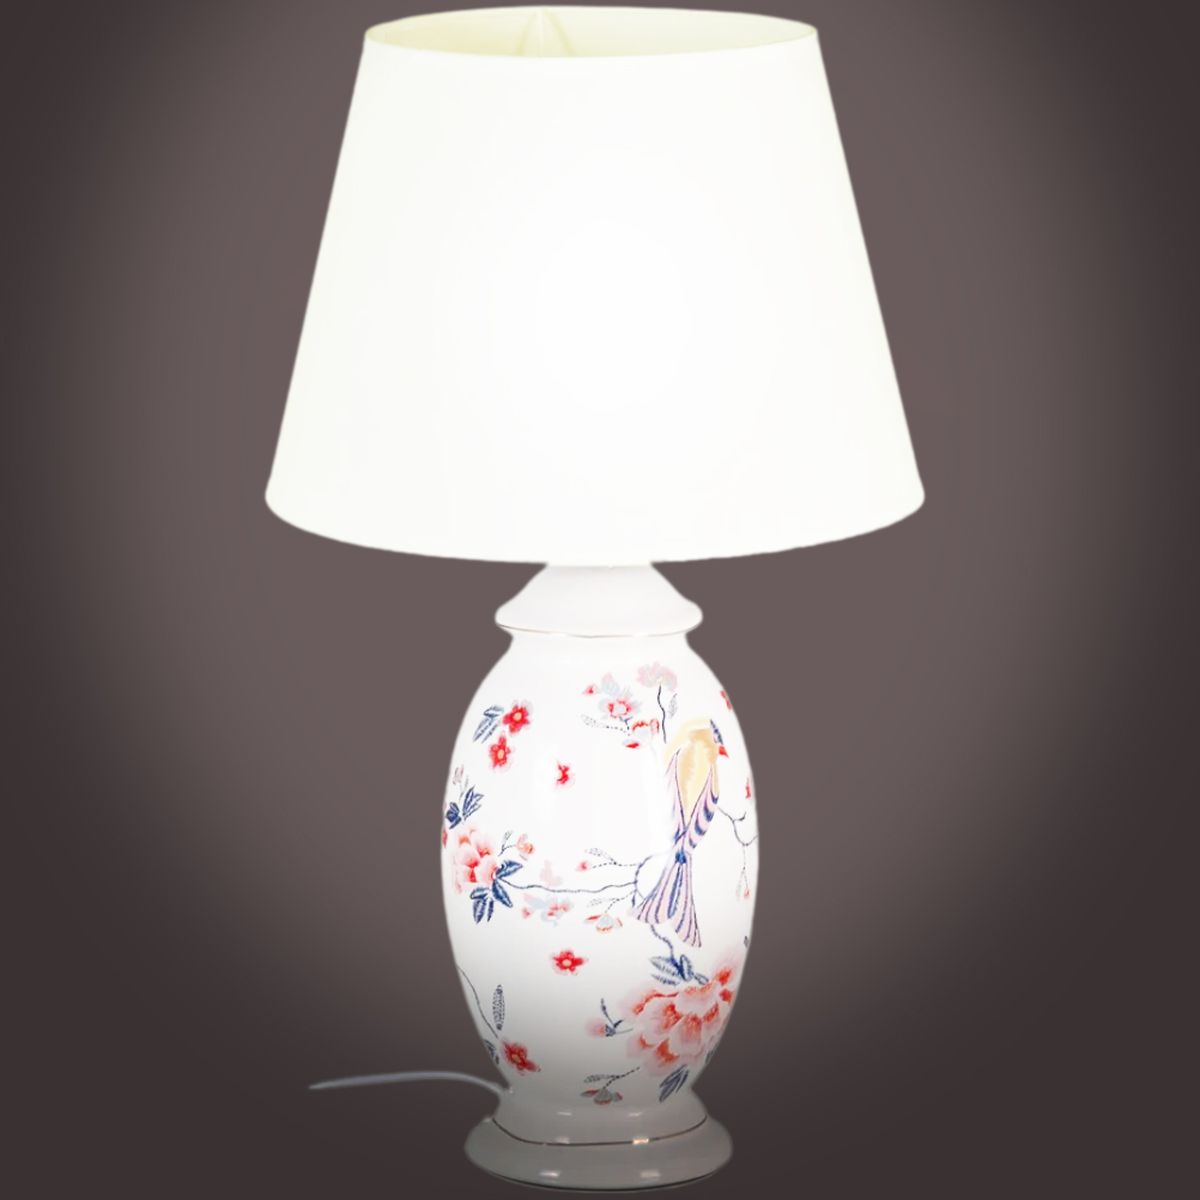 Lampe en cramique Oiseaux 51 cm